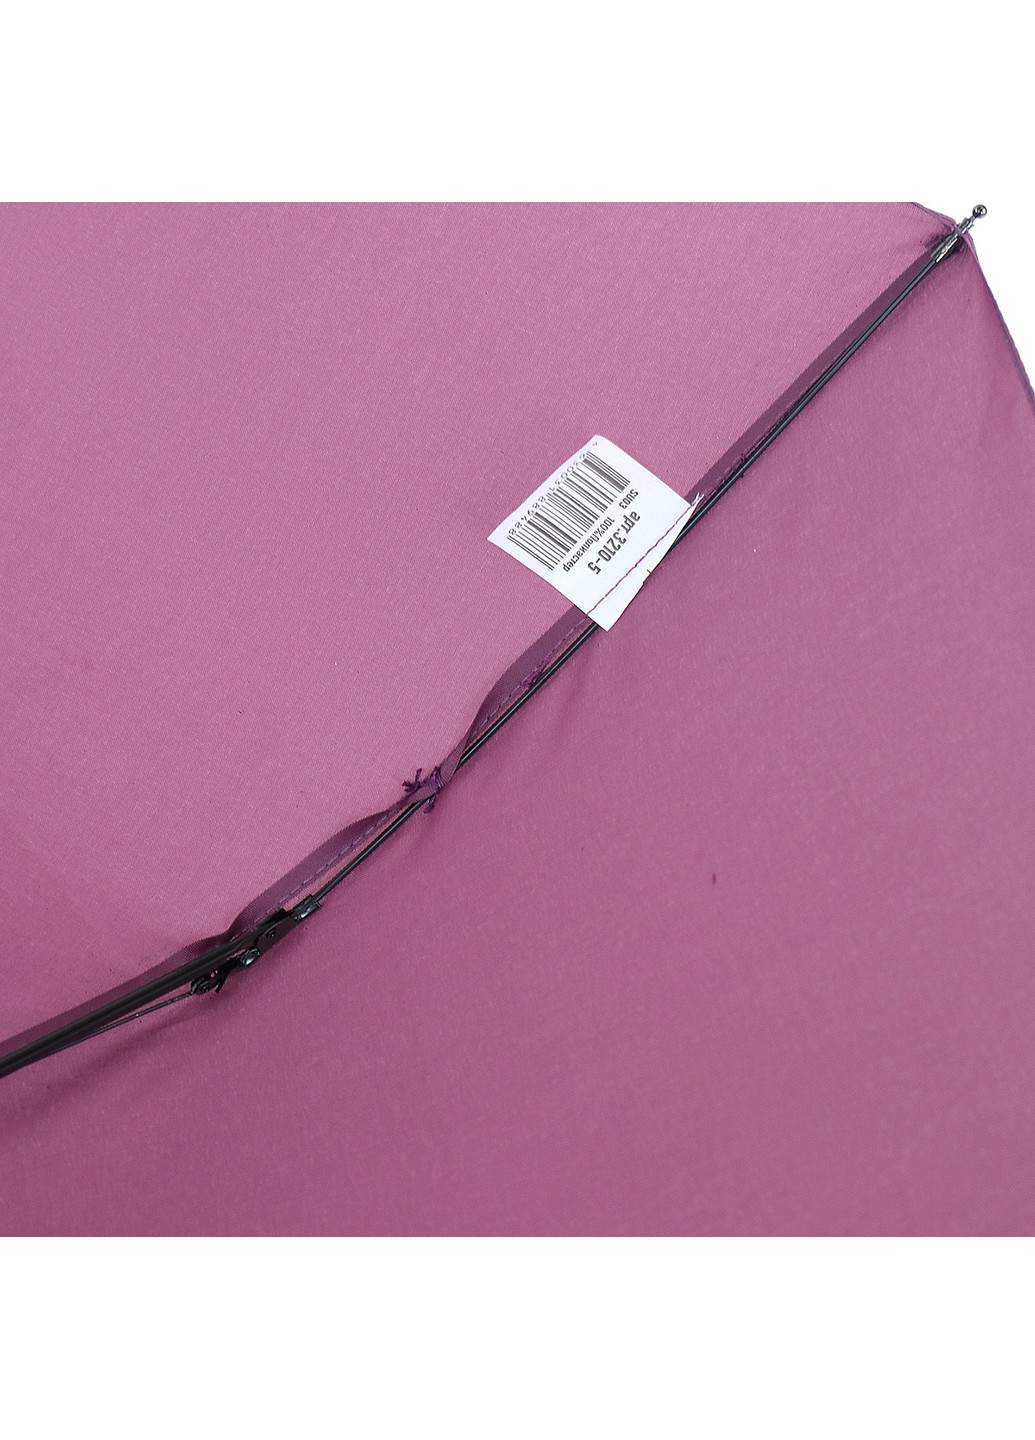 Женский складной зонт механический 99 см ArtRain (255710504)